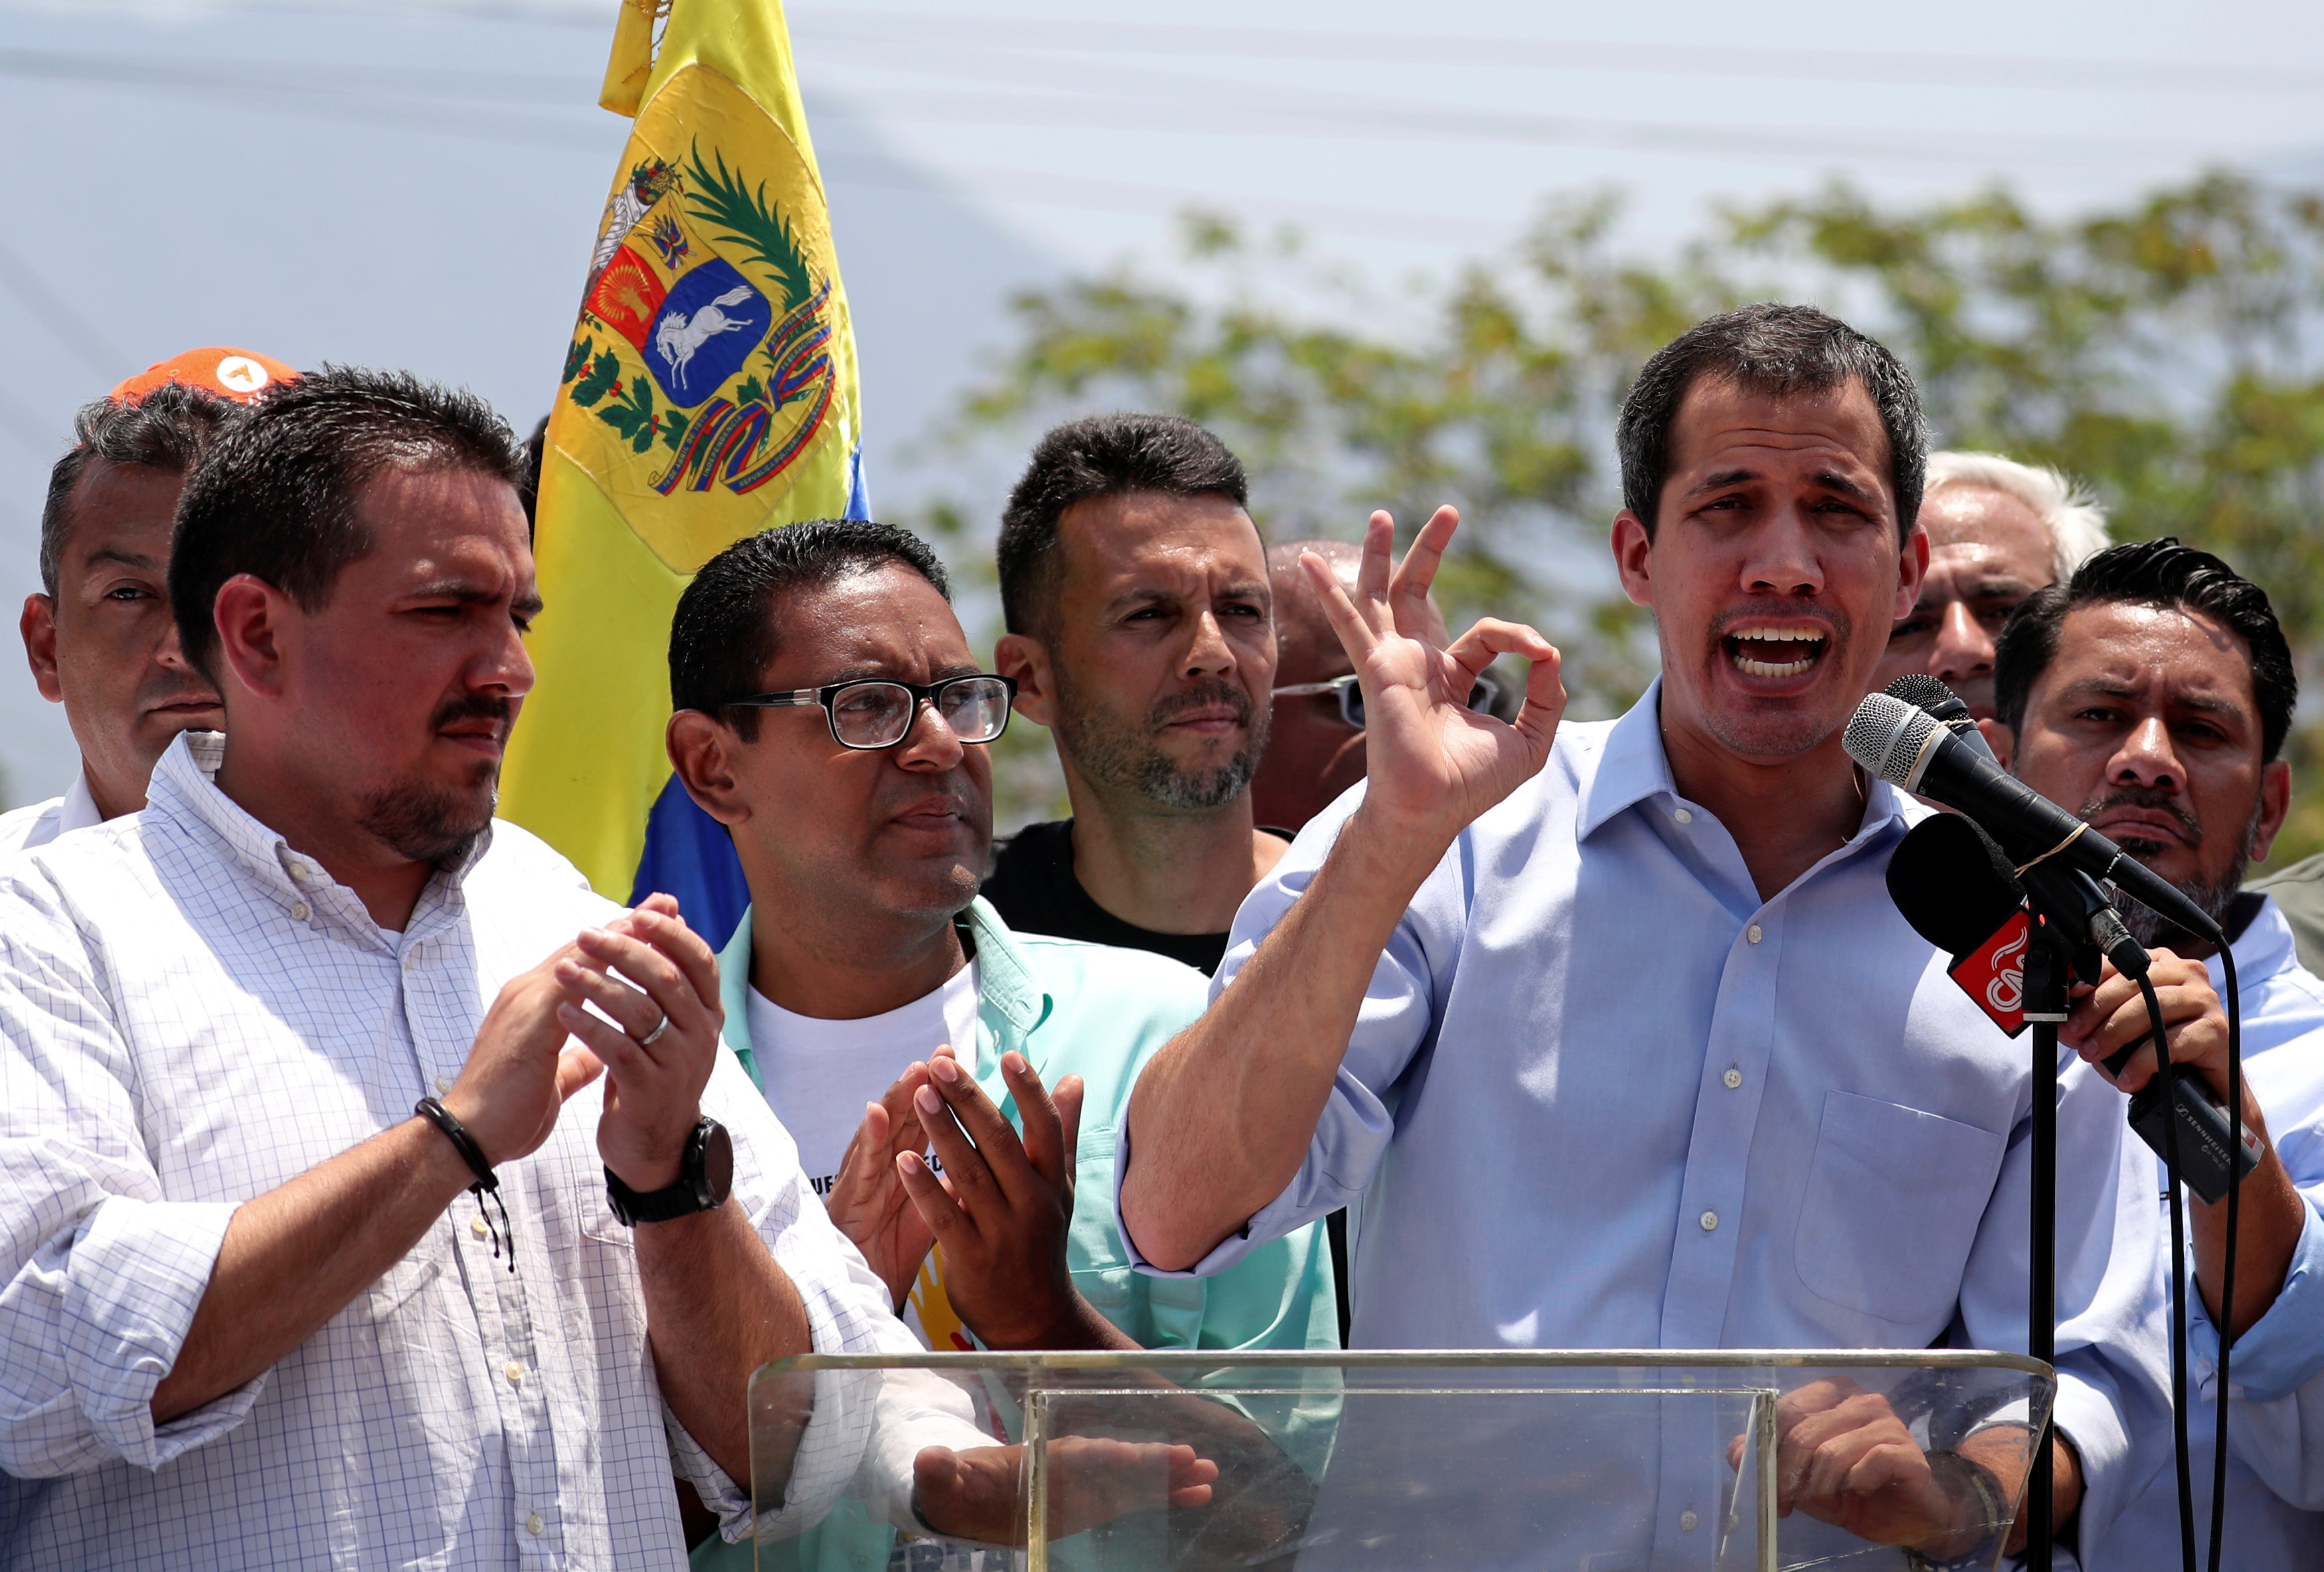 Los Vengadores no alcanzaron a recaudar la cantidad robada en el metro de Guarenas-Guatire, afirma Guaidó